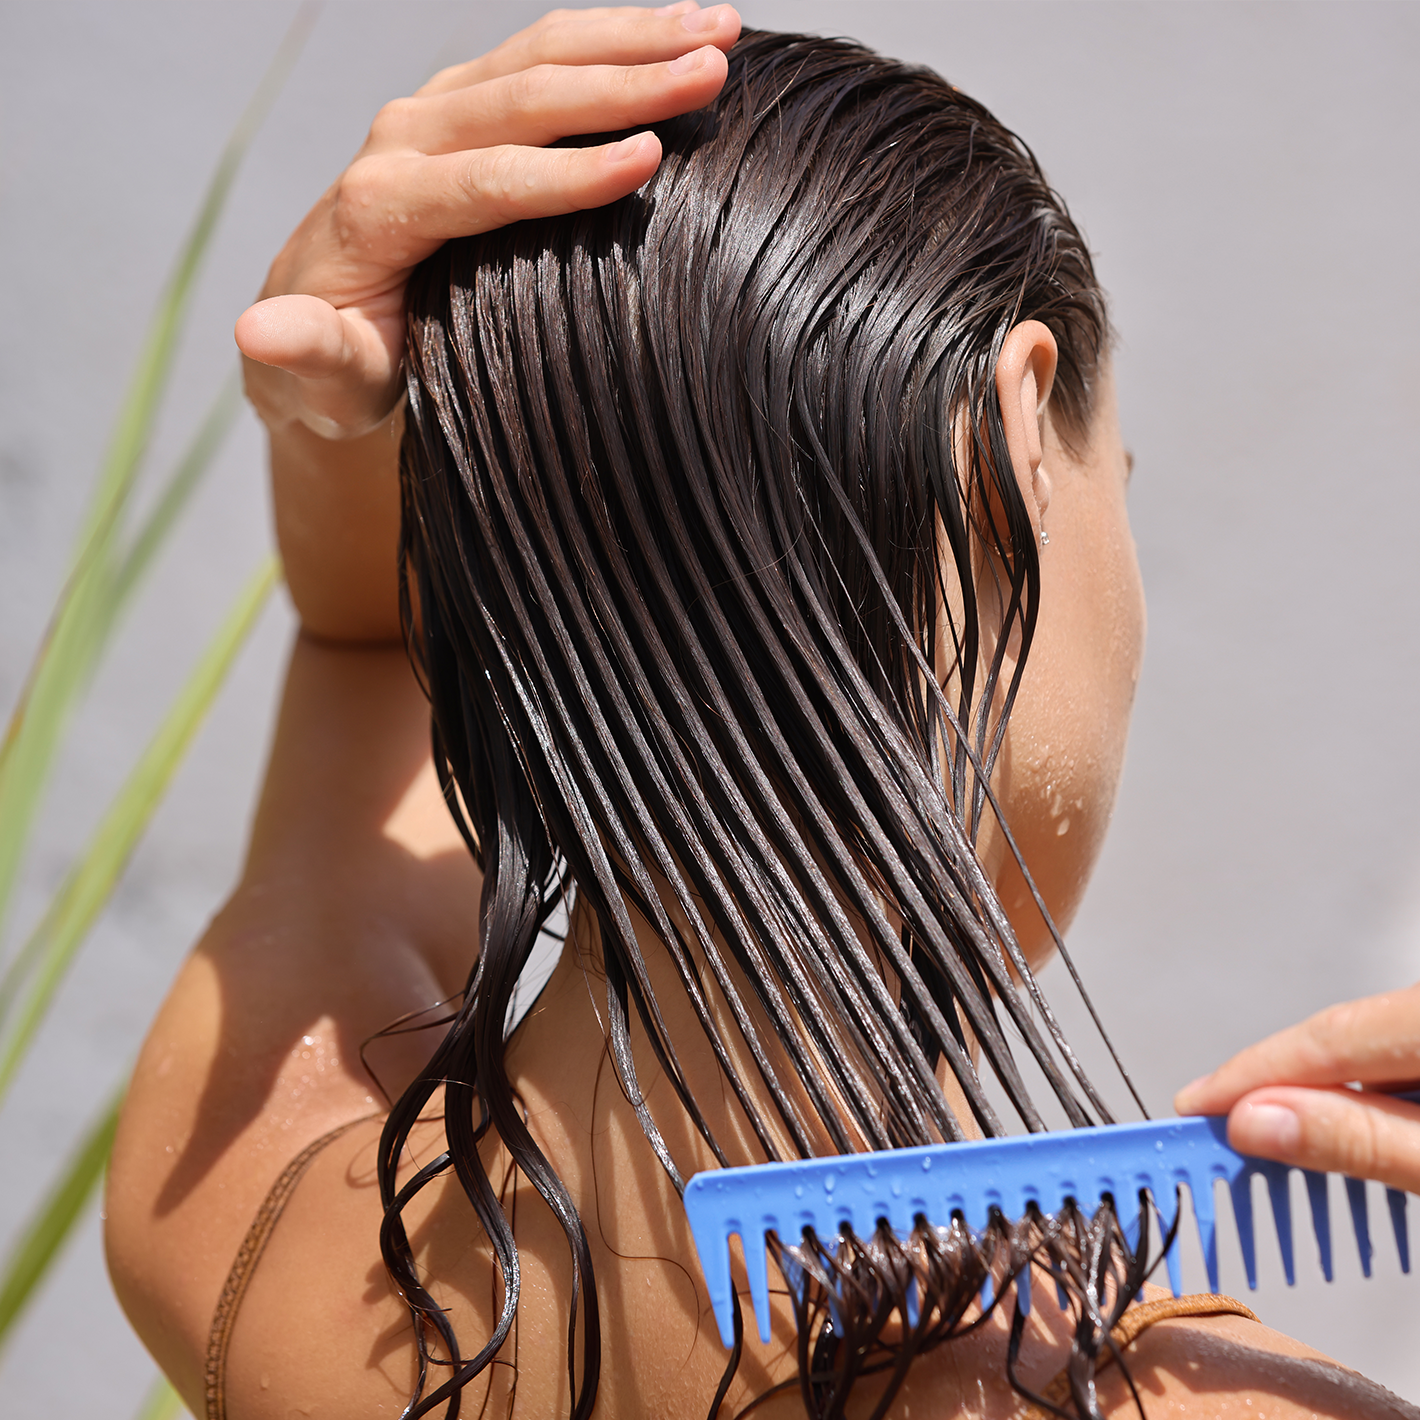 Woman combing her wet hair.